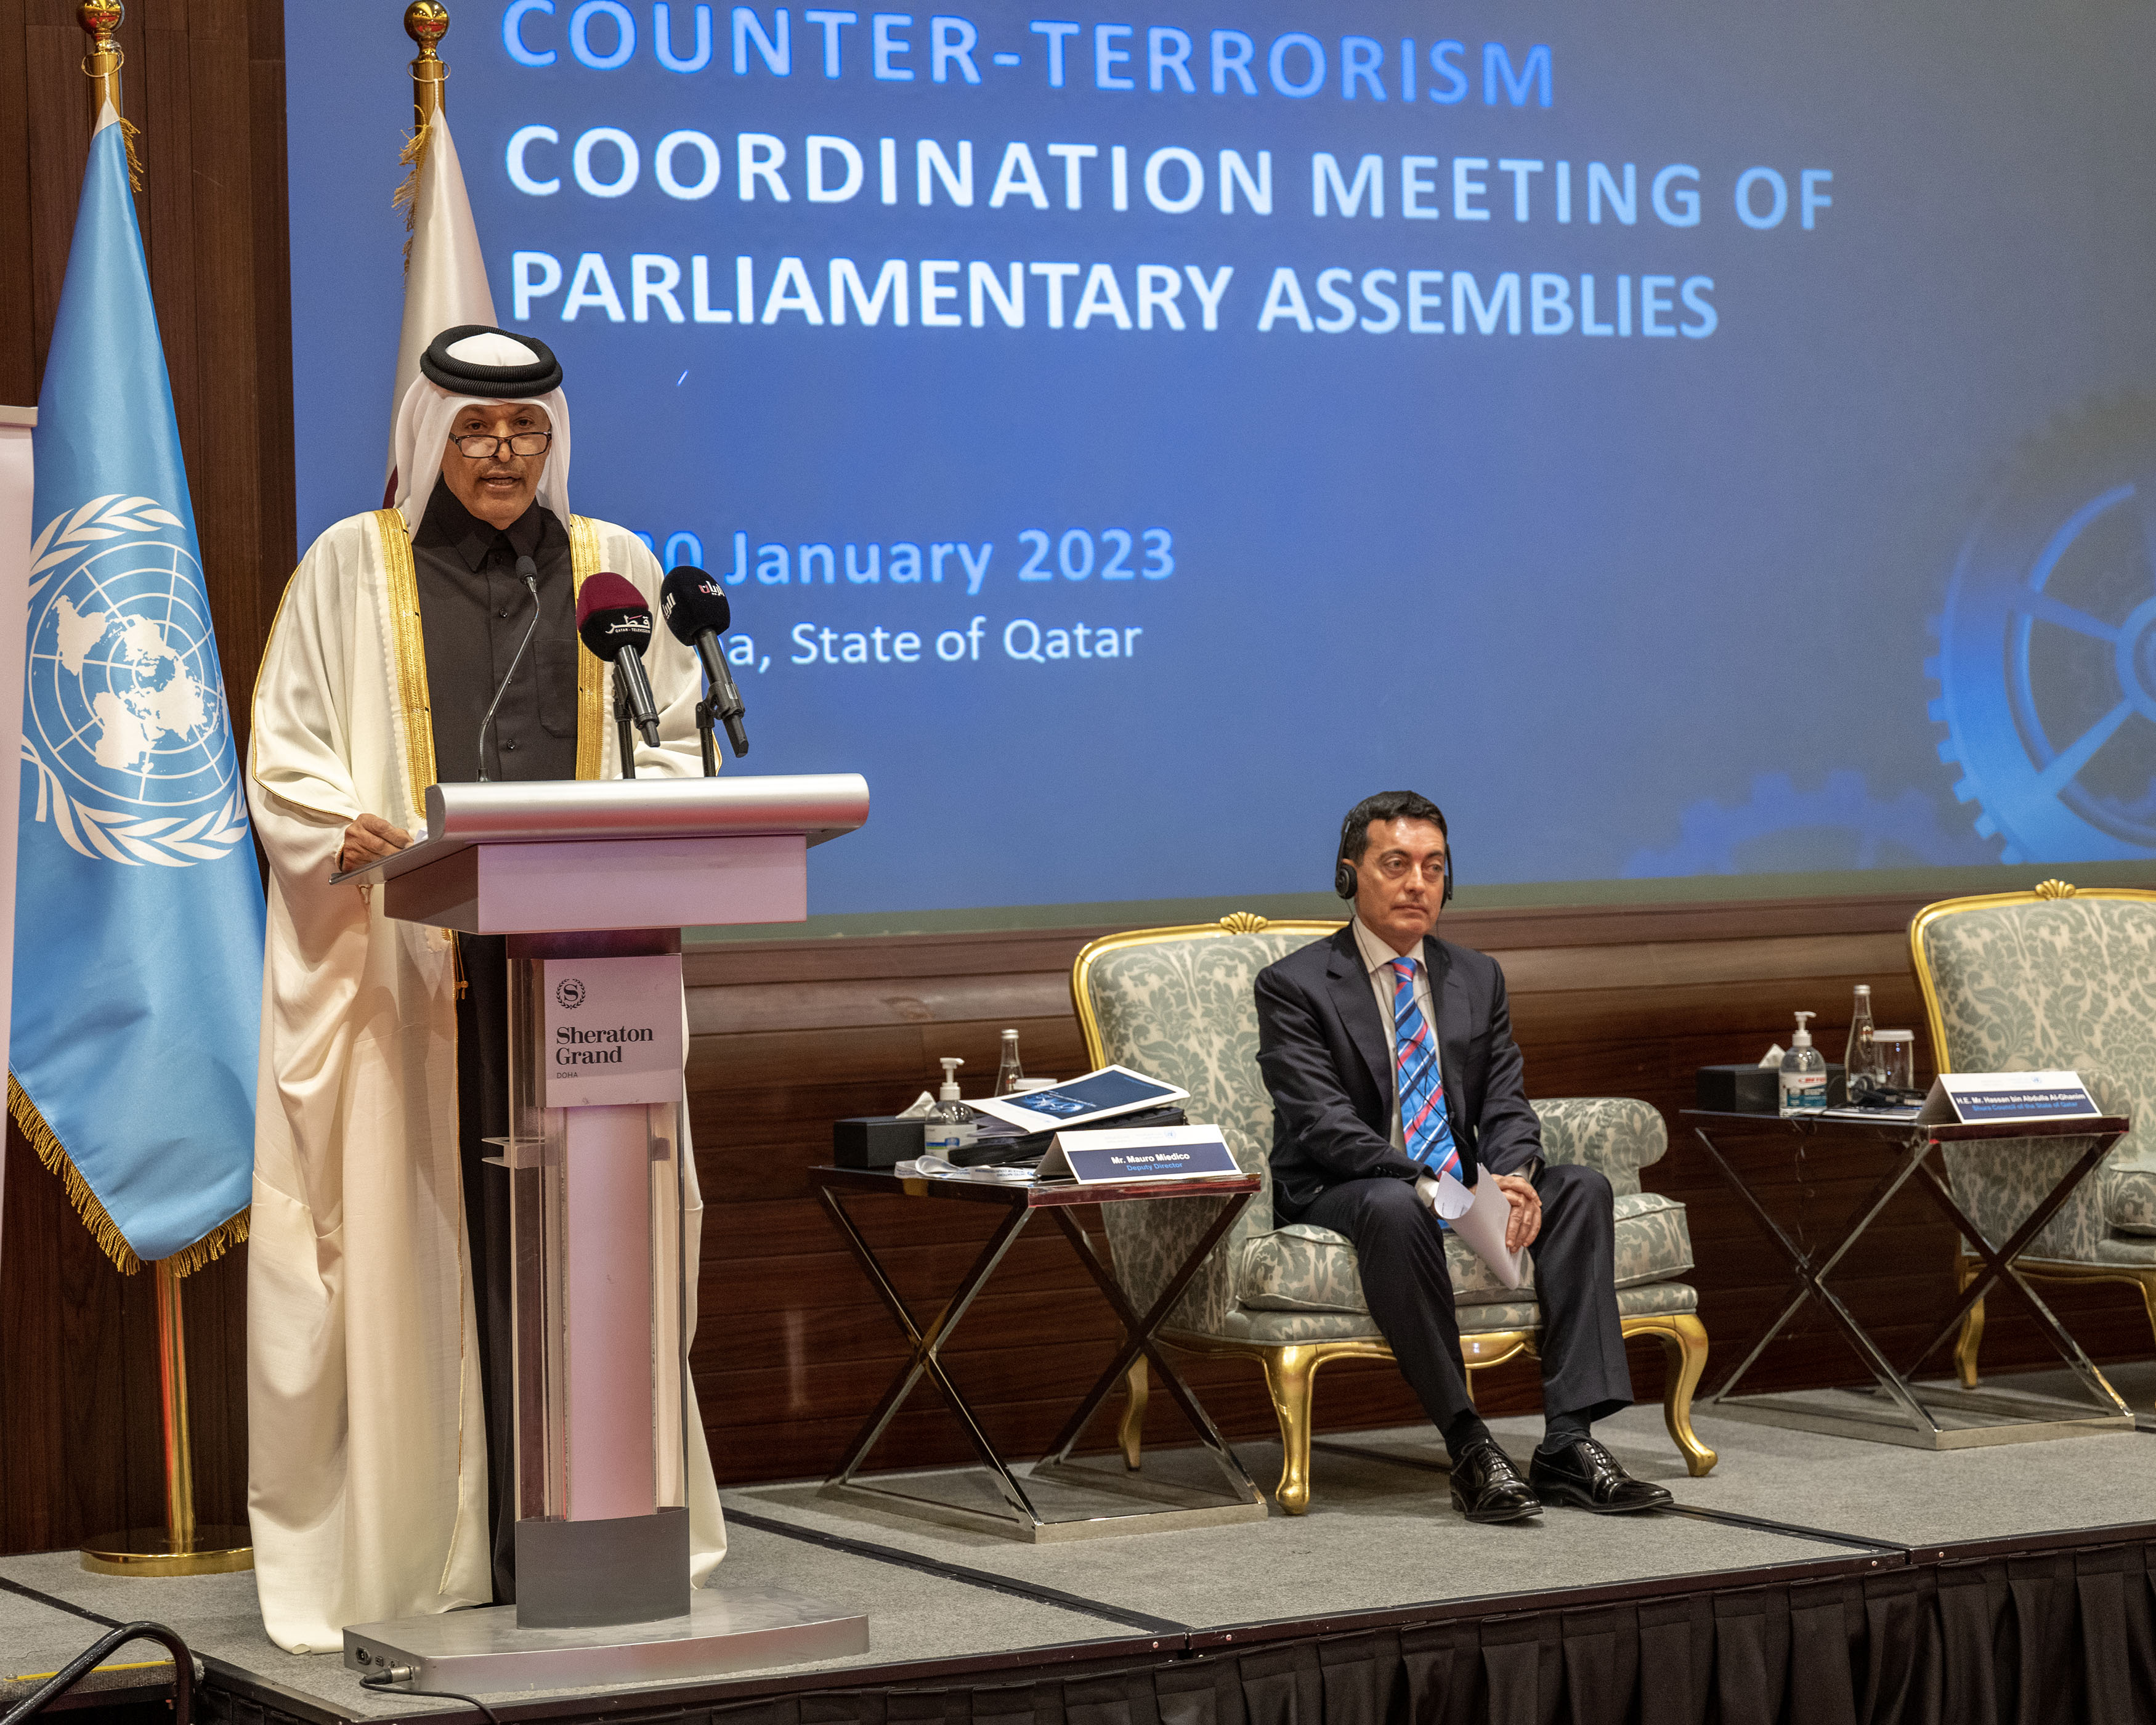 رئيس مجلس الشورى: قطر تنتهج سياسة ترسخ جهود التنمية المستدامة وتعزز الأمن والسلم الدوليين